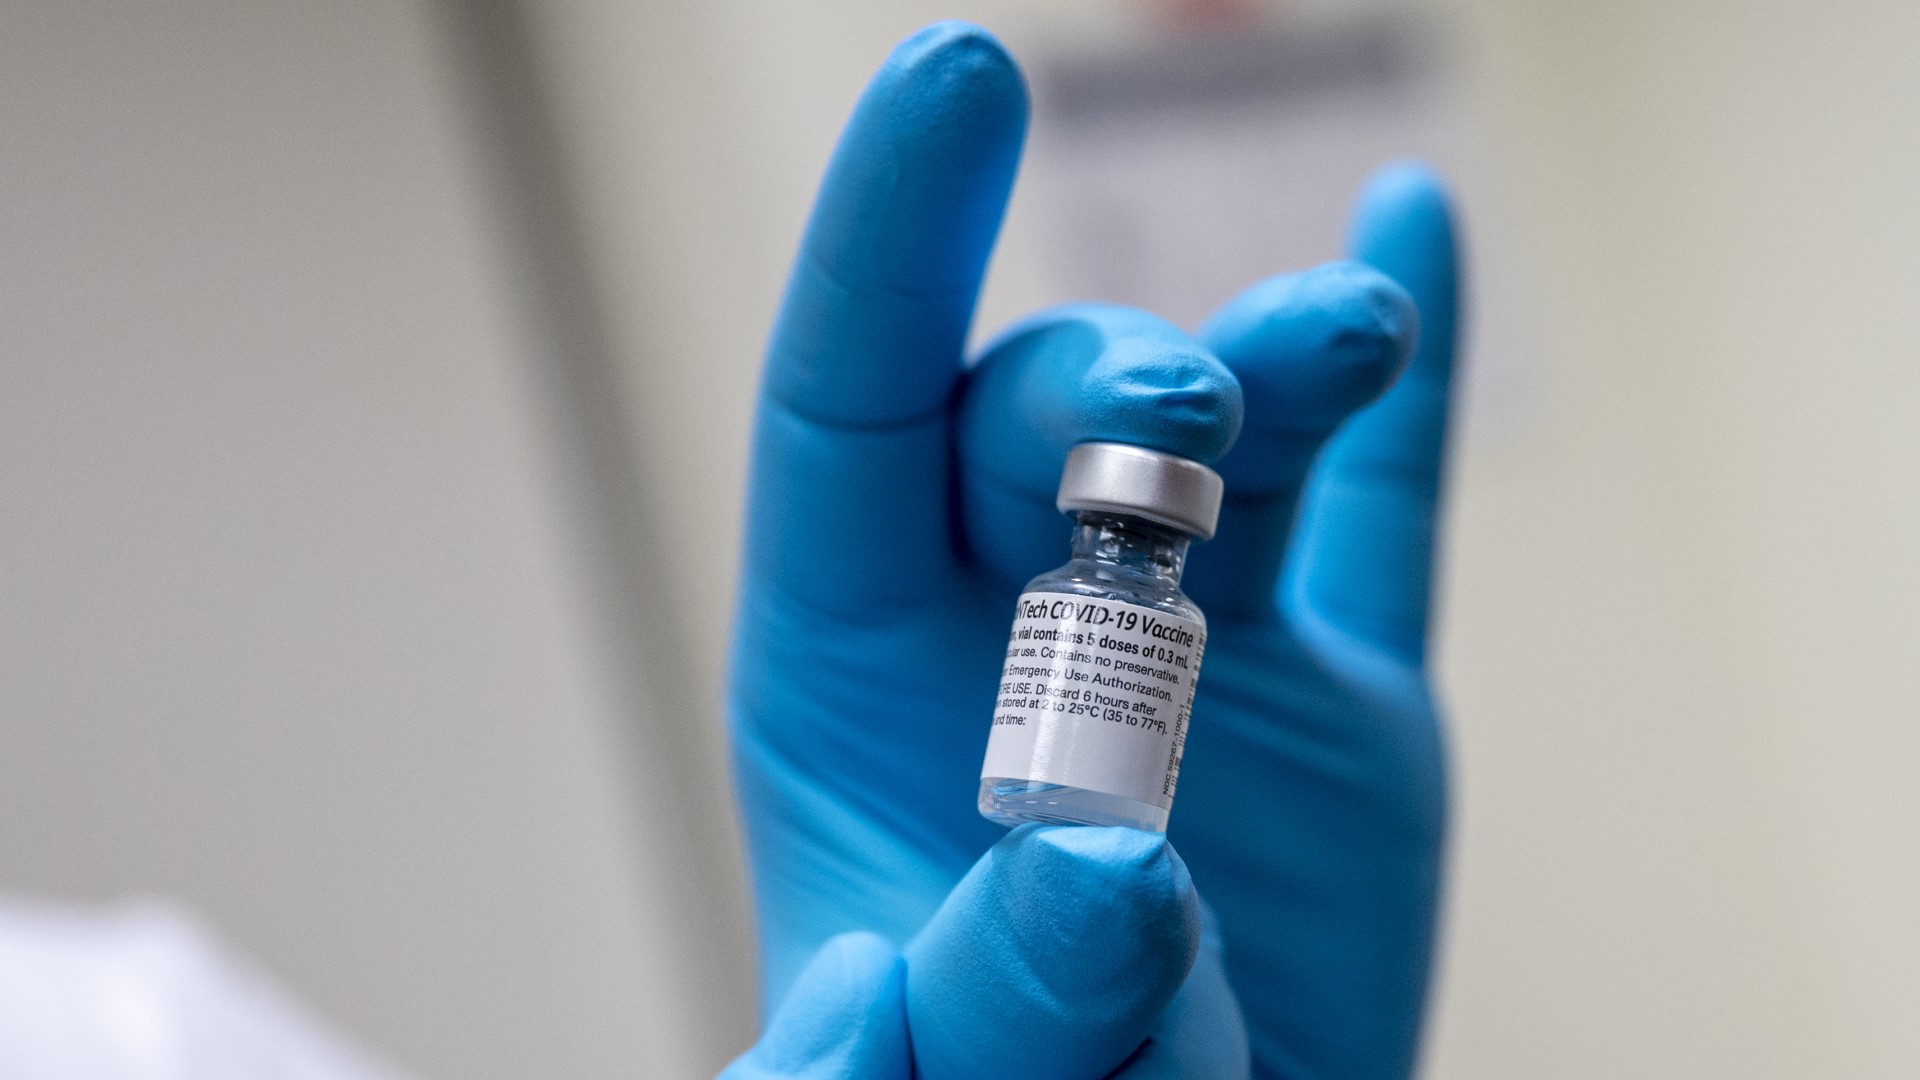 ไฟเซอร์ยื่นขออนุญาตขึ้นทะเบียนวัคซีนป้องกันโควิด – 19 แบบสมบูรณ์ต่อ อ.ย. สหรัฐฯ